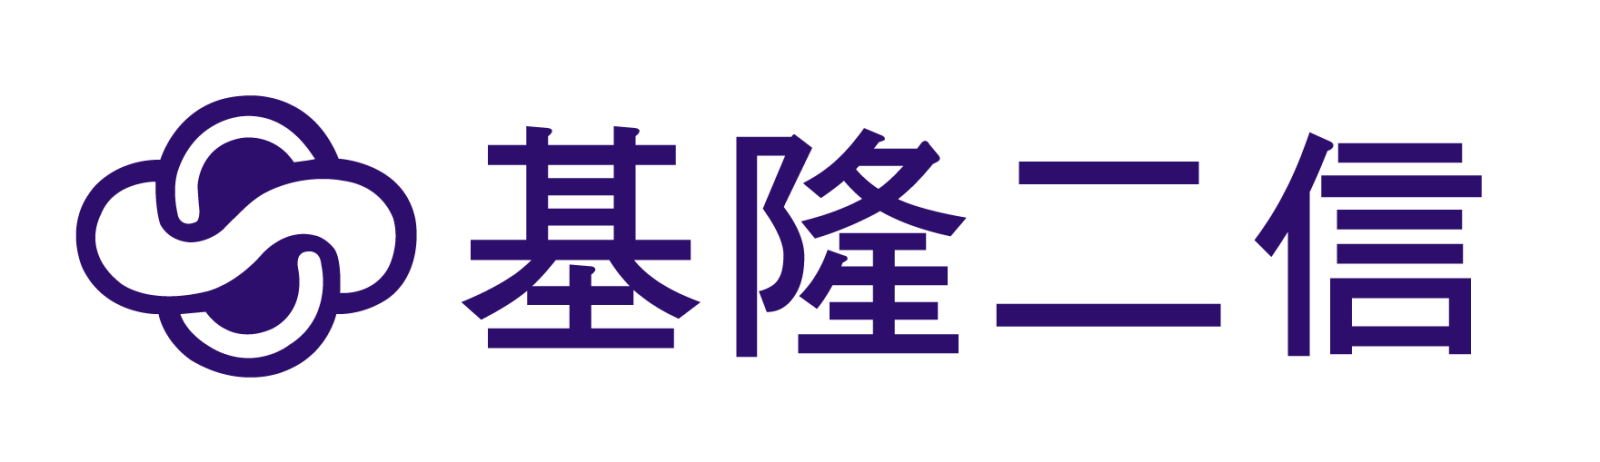 基隆二信 logo